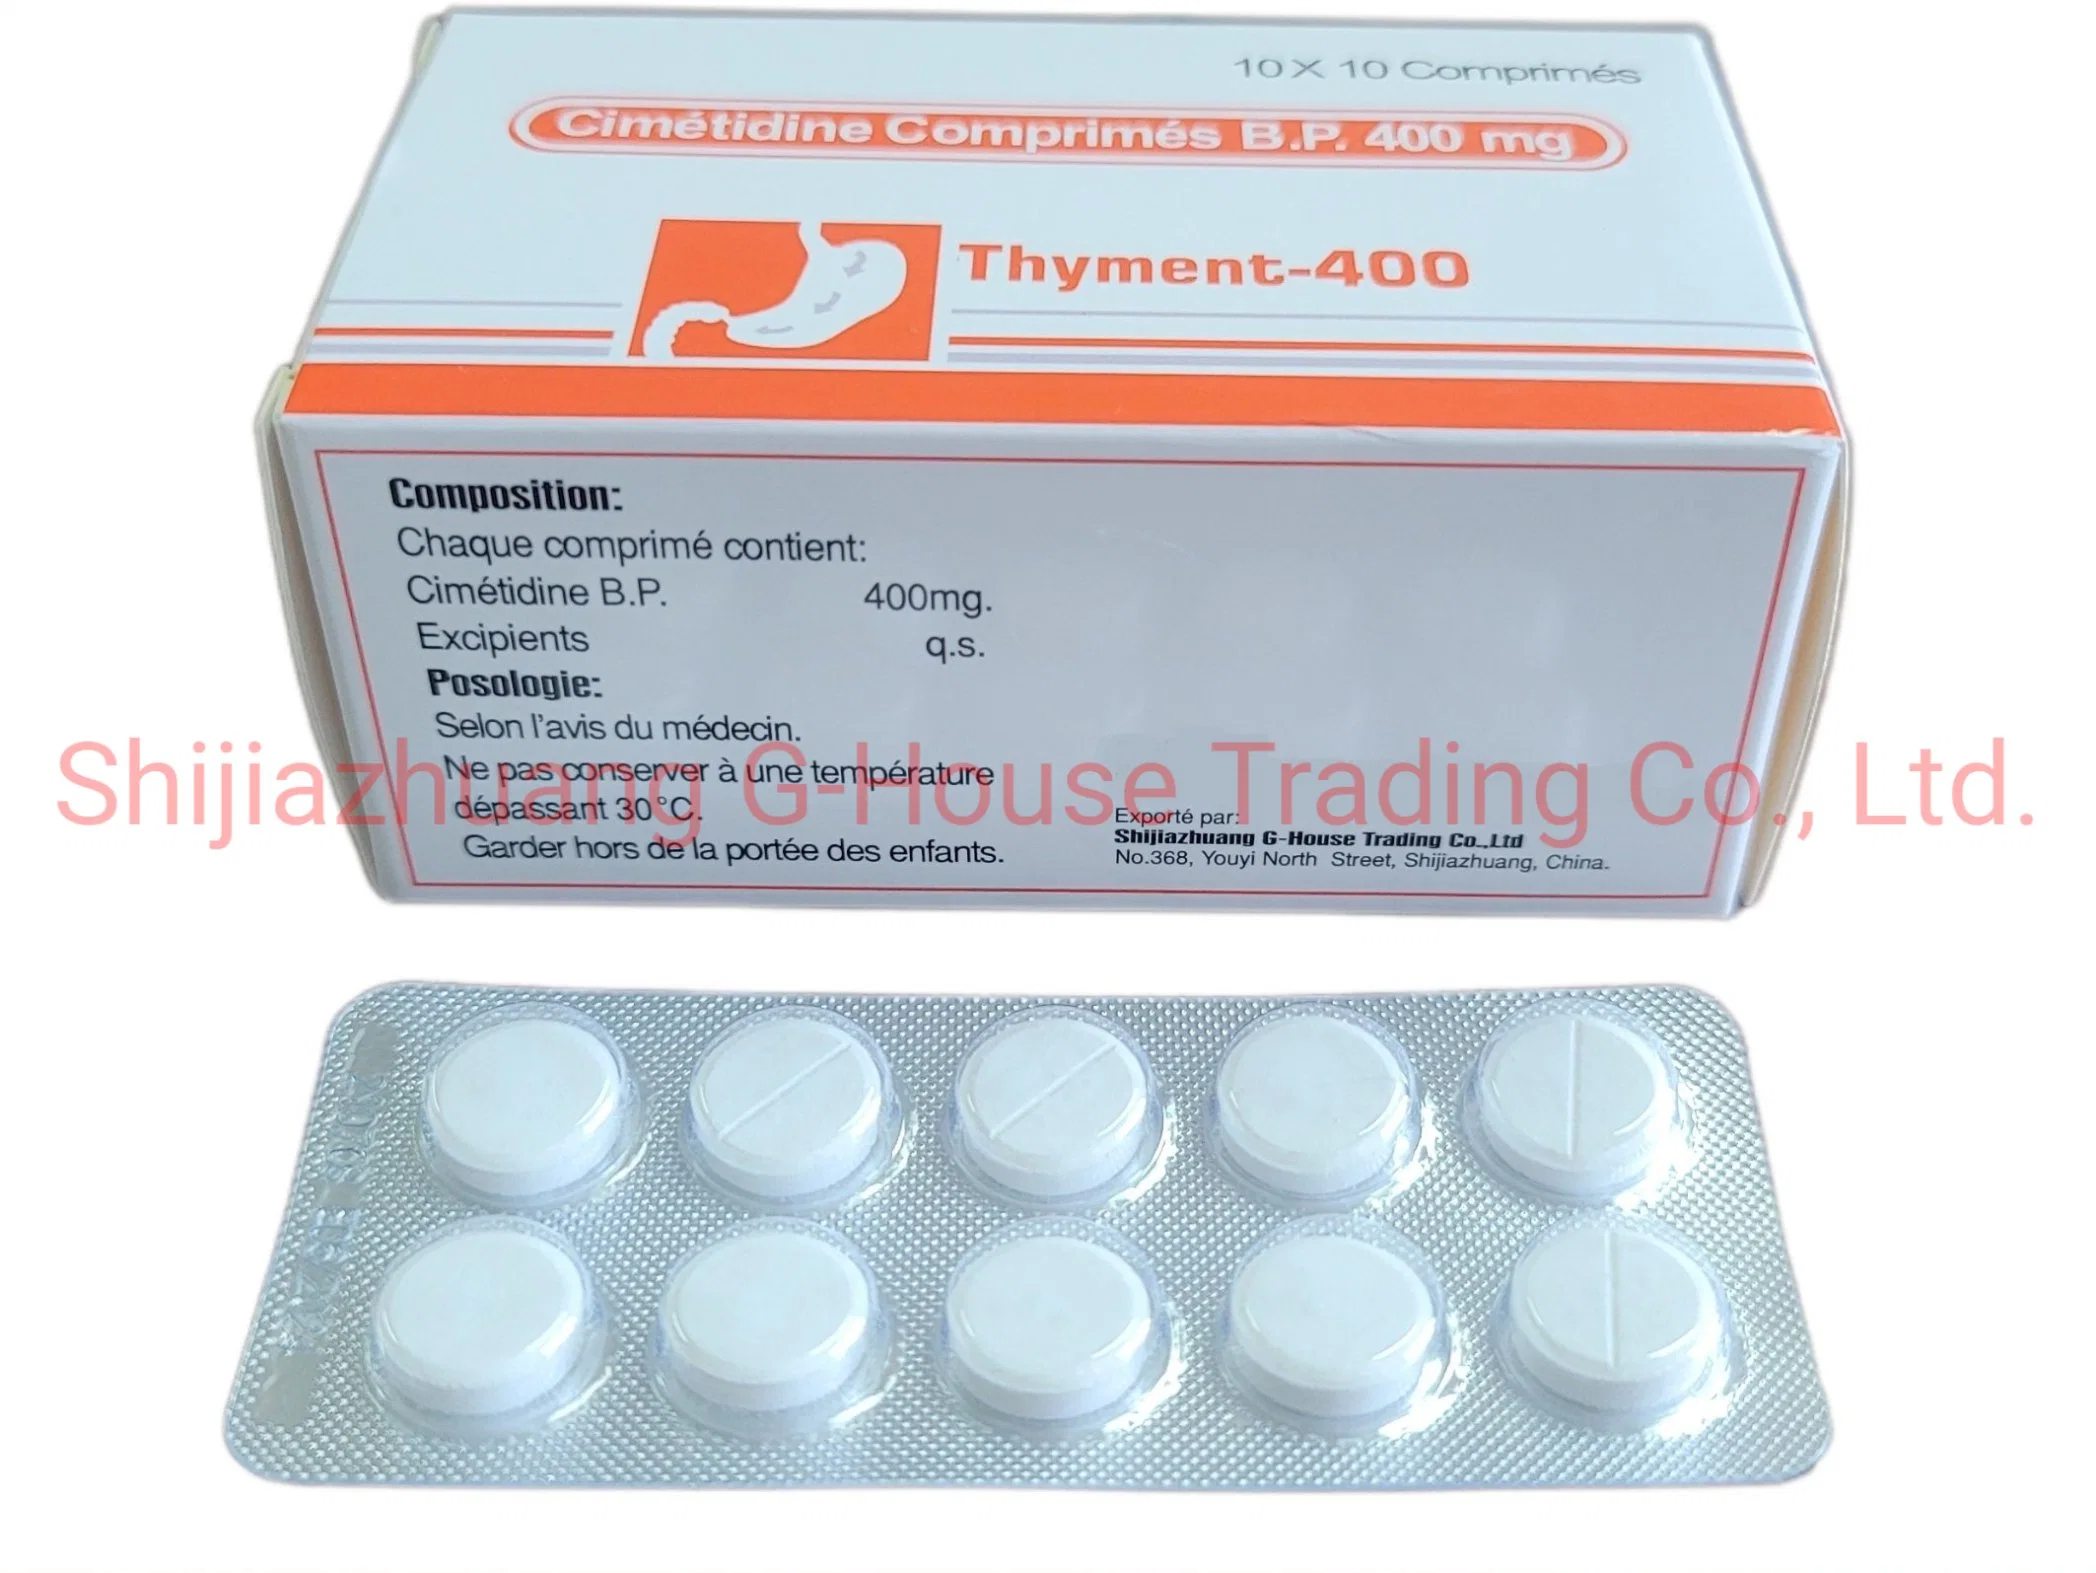 La cimetidina tabletas 400 mg Medicamentos Los medicamentos farmacéuticos